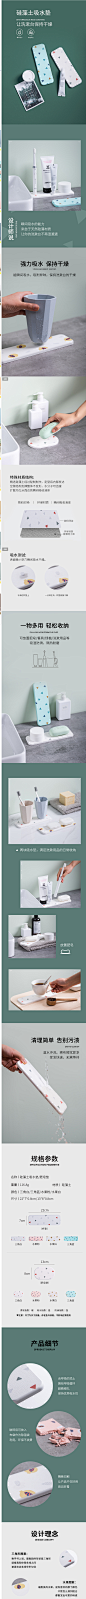 物鸣硅藻泥肥皂垫卫生间吸水垫洗手台硅藻土洗漱垫厨房防水垫杯垫-淘宝网